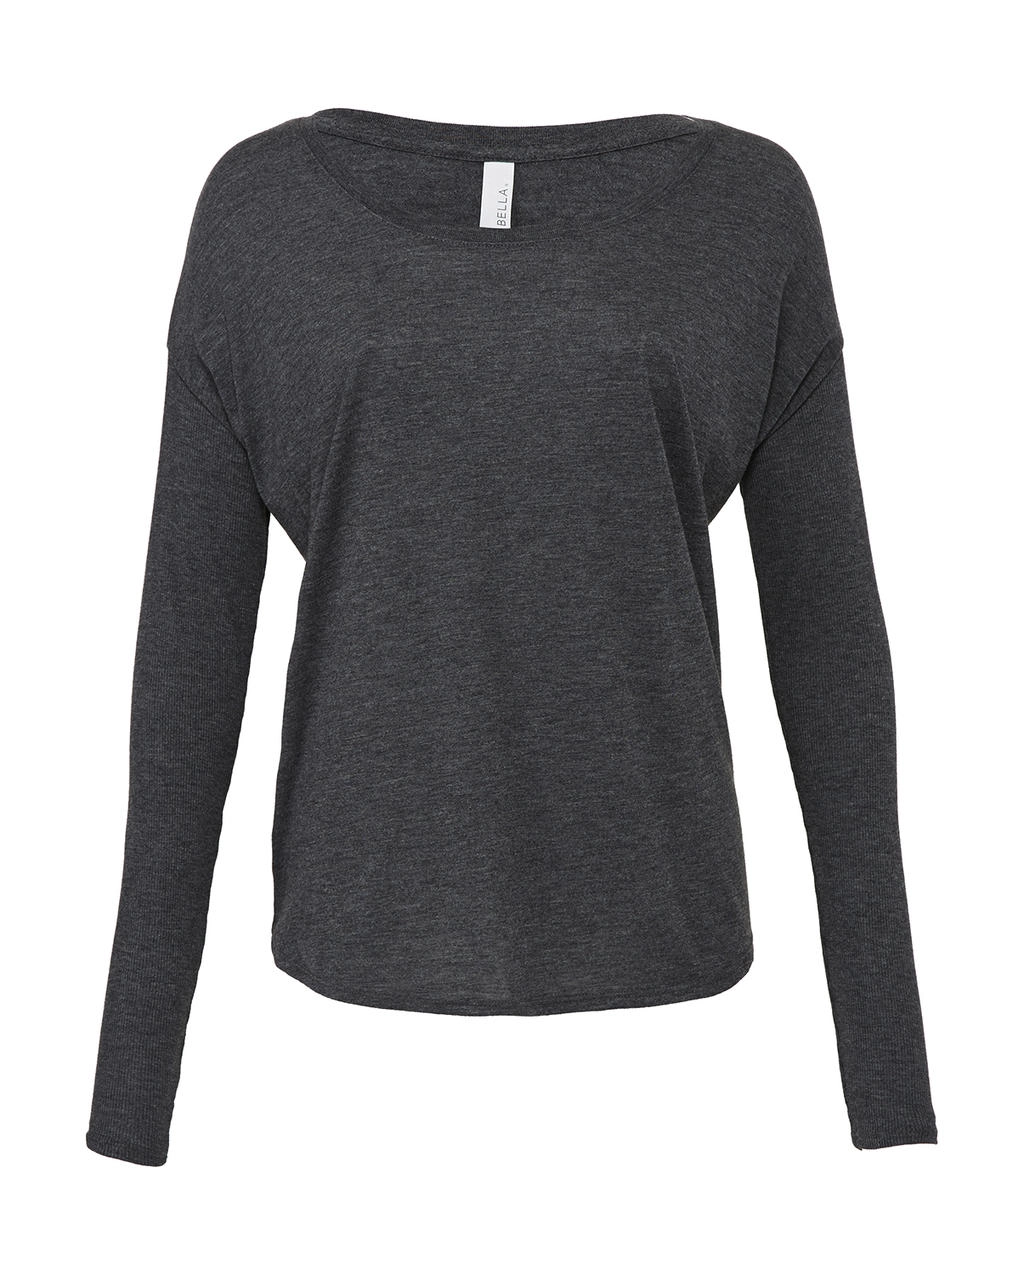 Flowy T-Shirt with 2x1 Sleeves zum Besticken und Bedrucken in der Farbe Dark Grey Heather mit Ihren Logo, Schriftzug oder Motiv.